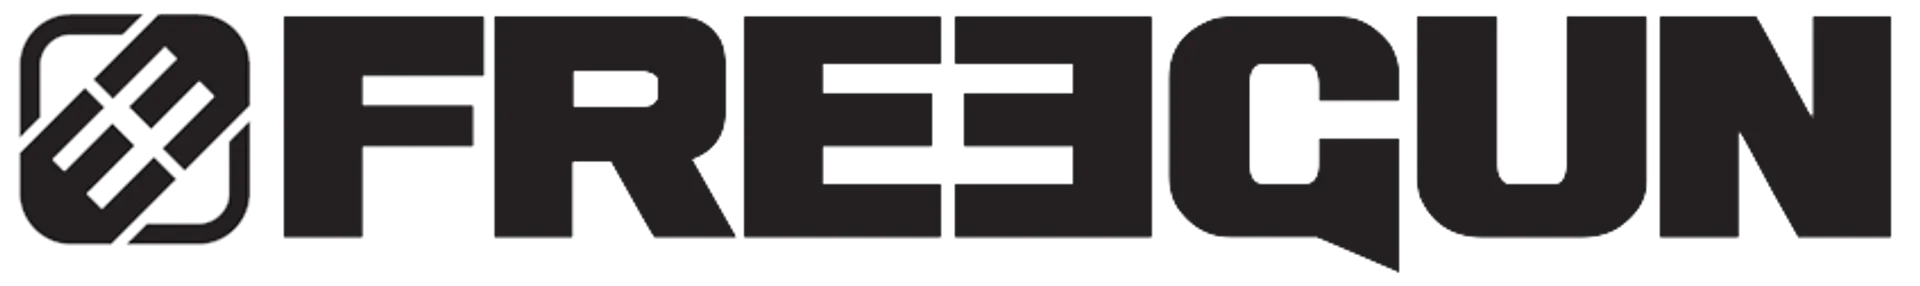 FREEGUM logo